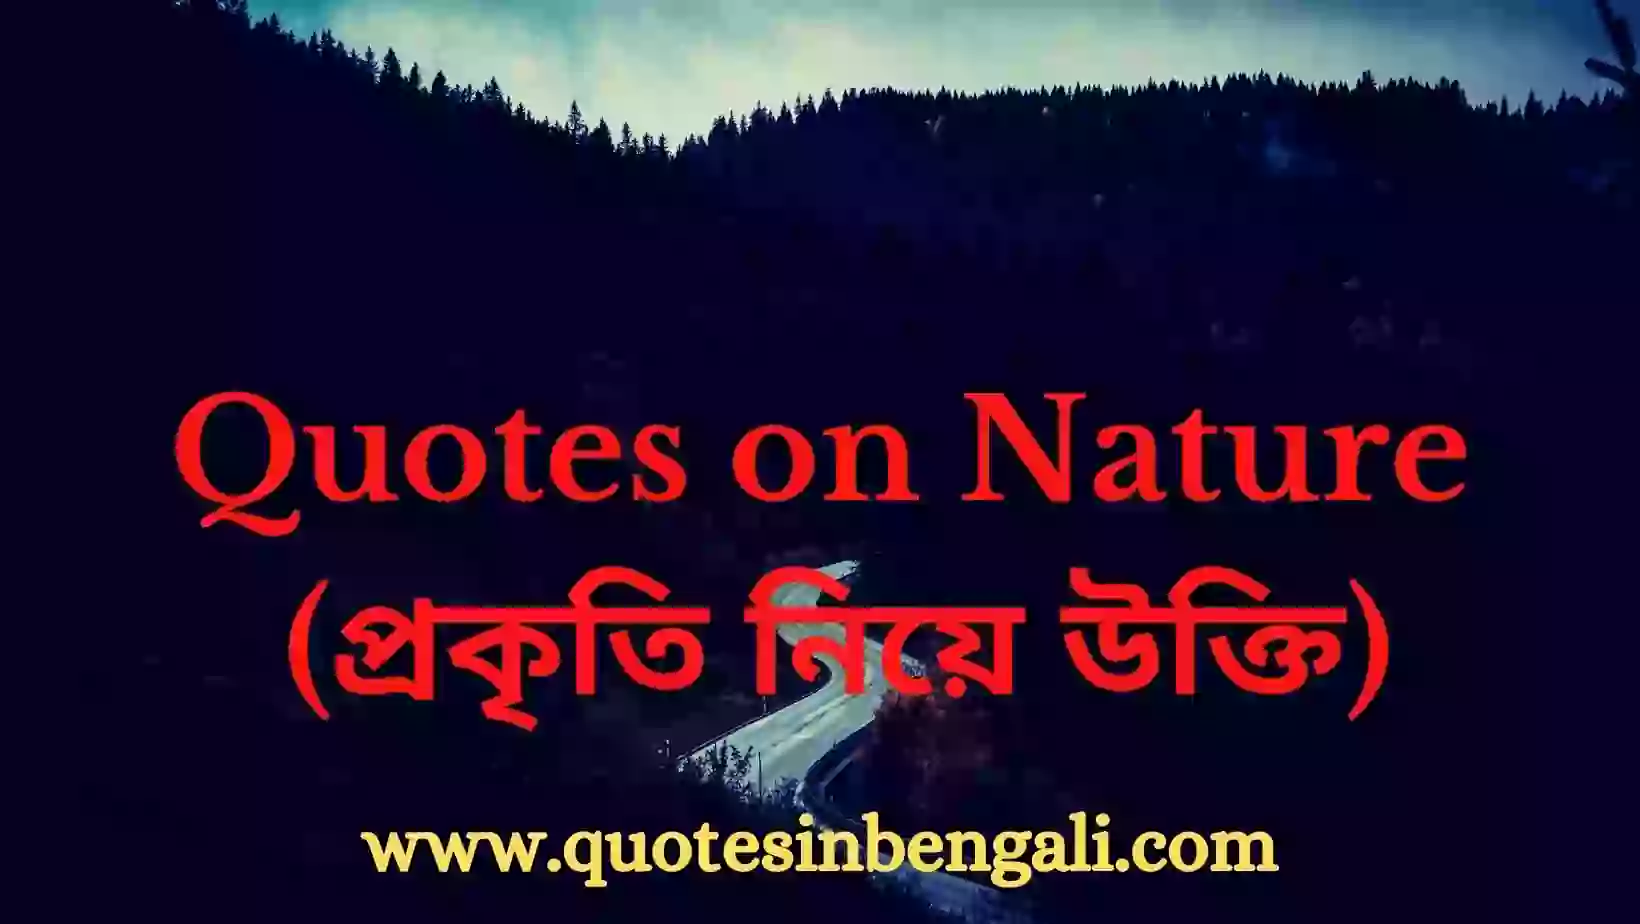 Nature quotes in bengali